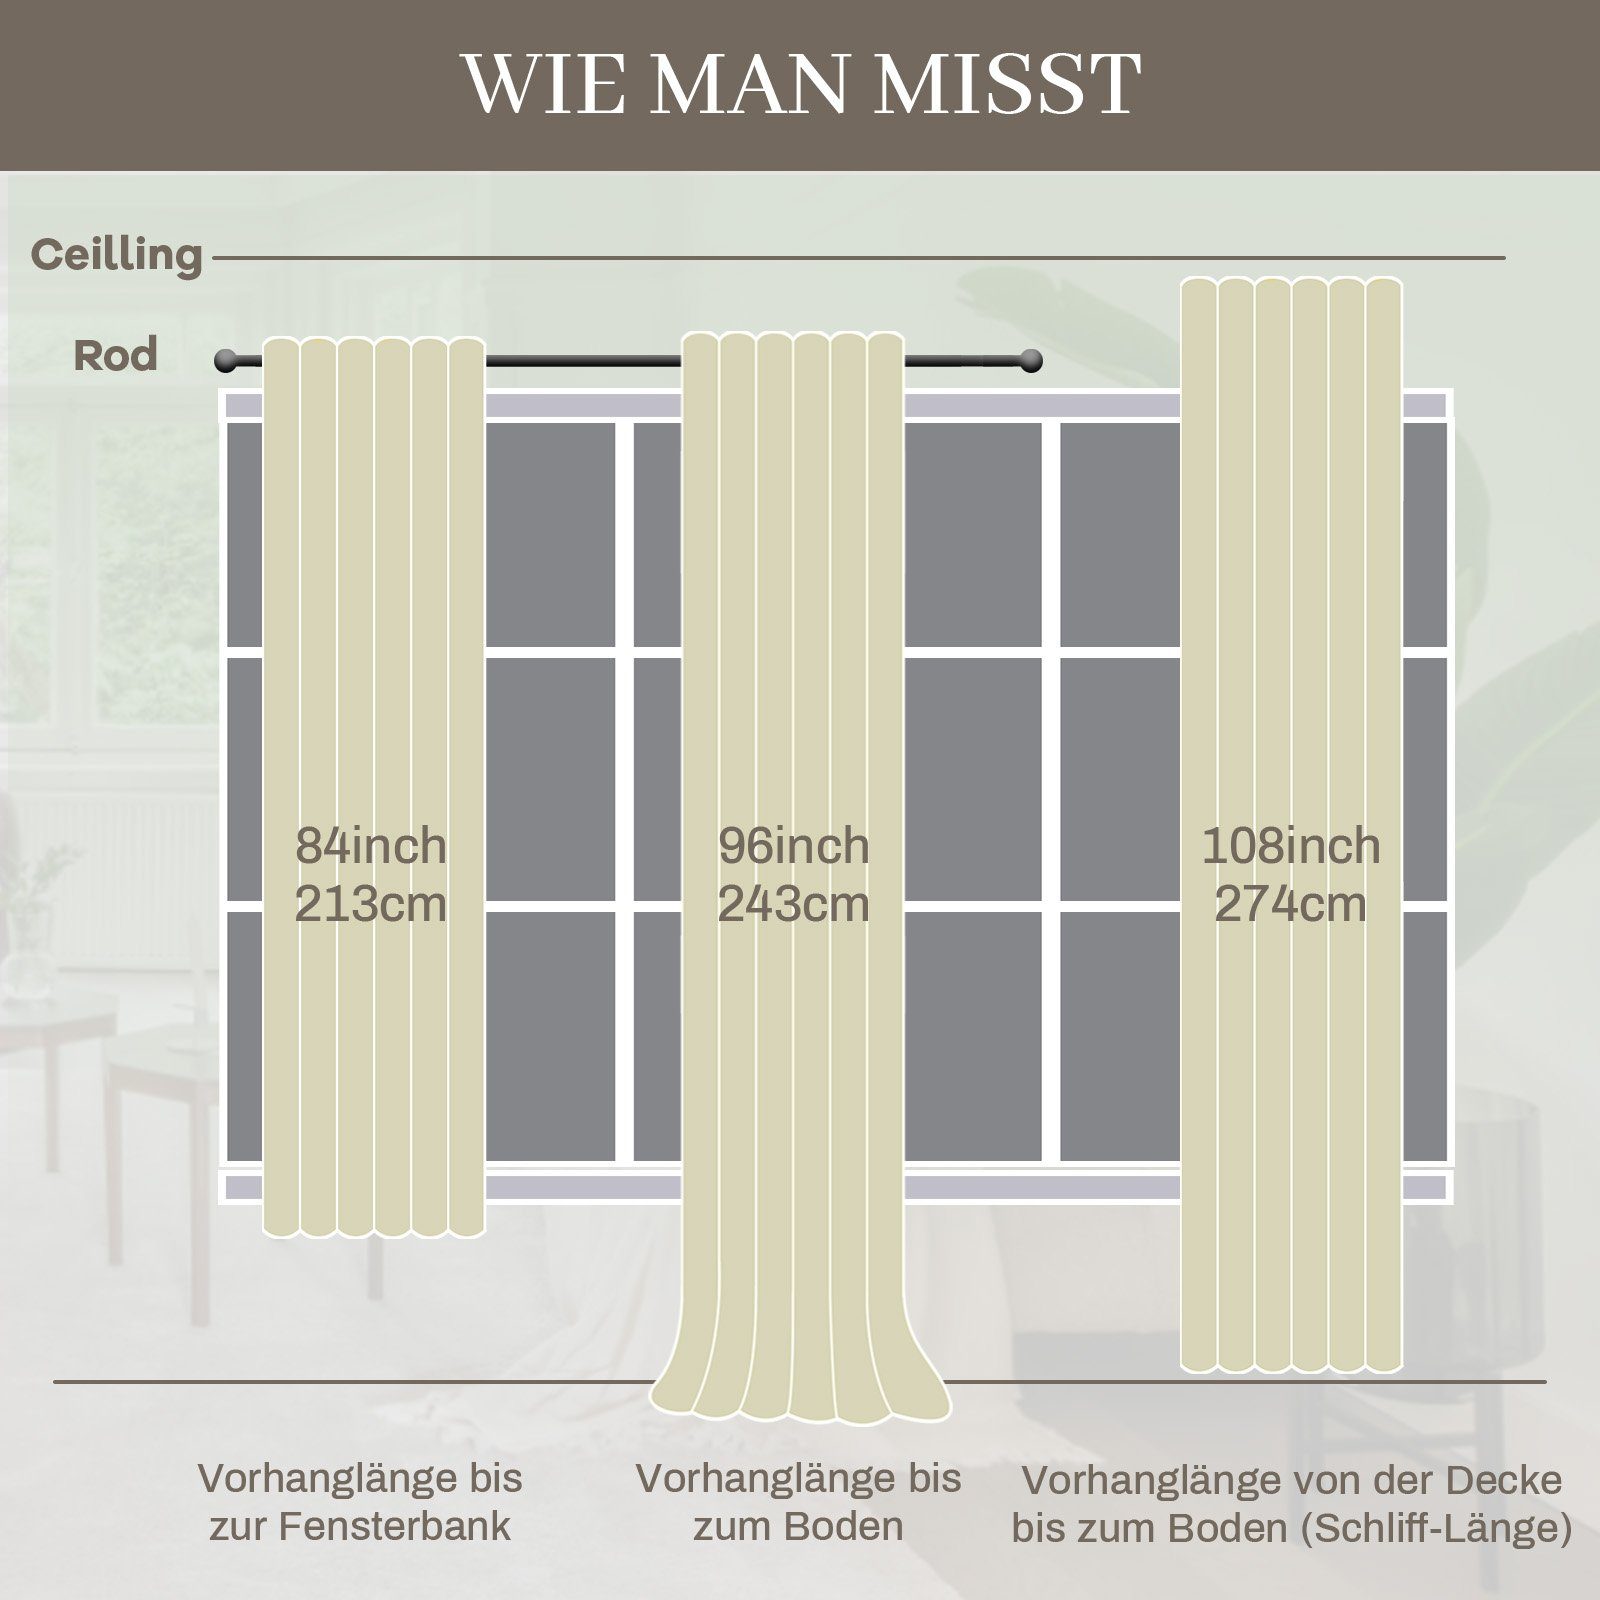 Vorhang Blickdicht für Wohnzimmer Schlafzimmer, 2 50-70% Gardinen Vorhang, BTTO, Elfenbeinweiß Stück Samt Kräuselband, Verdunkelungsvorhang, mit